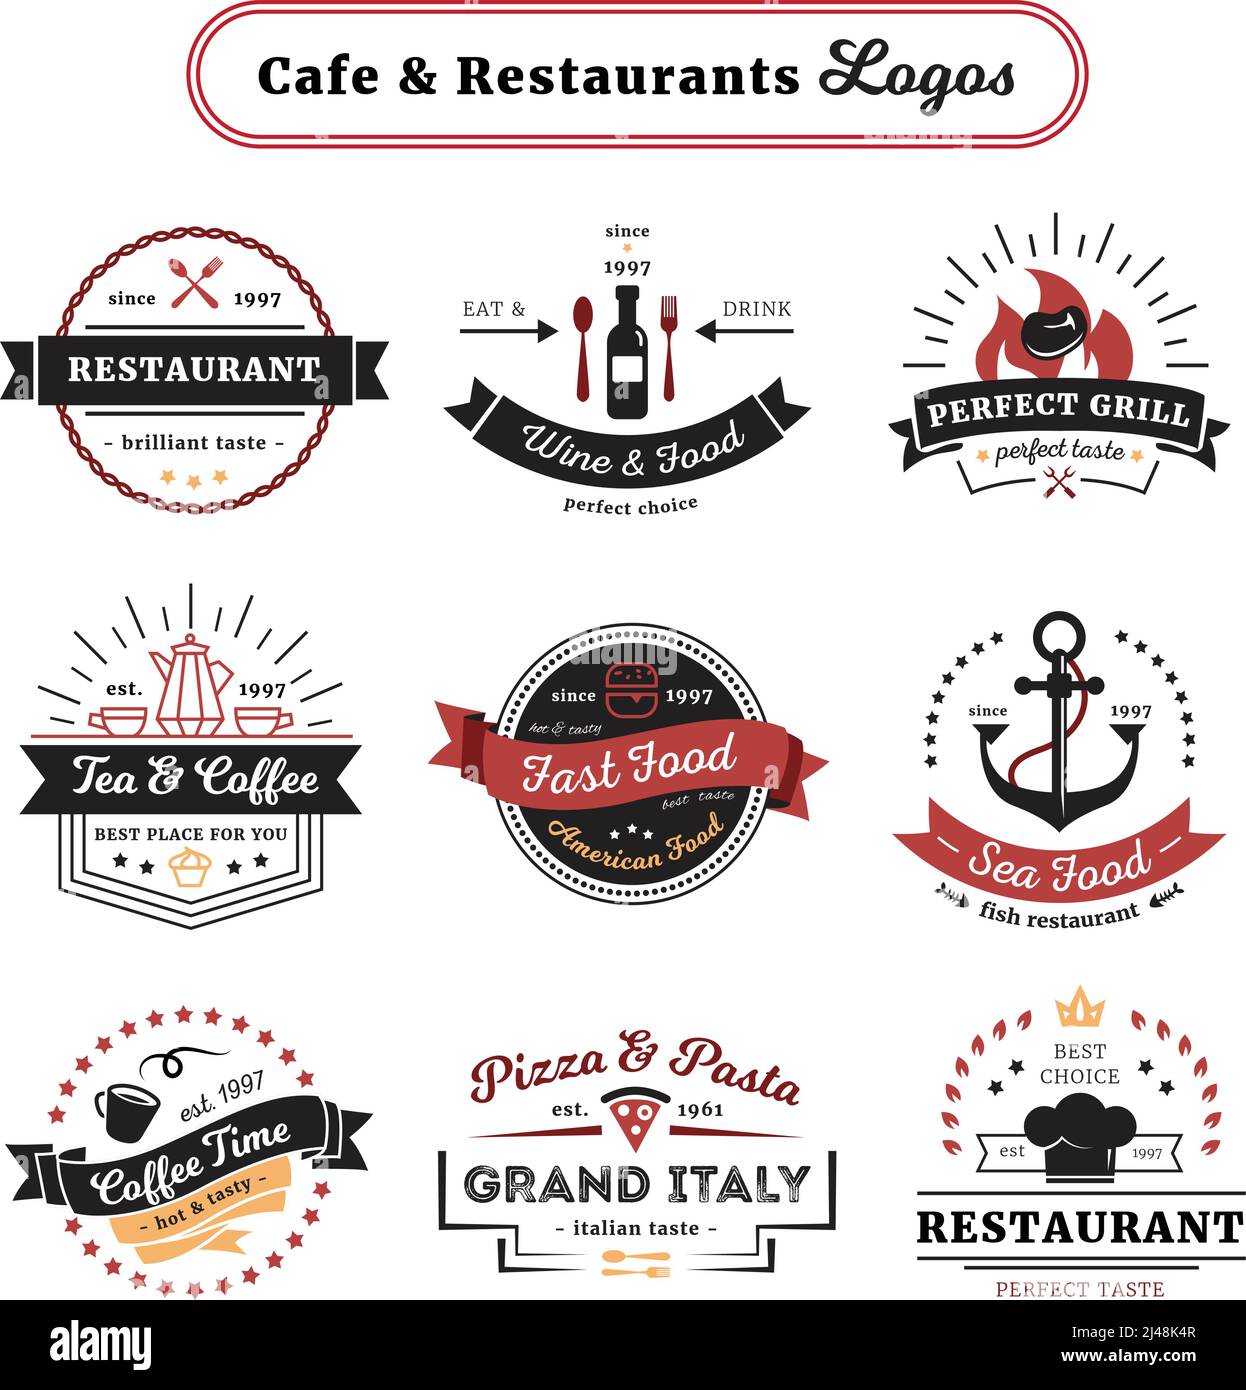 logo cafe design